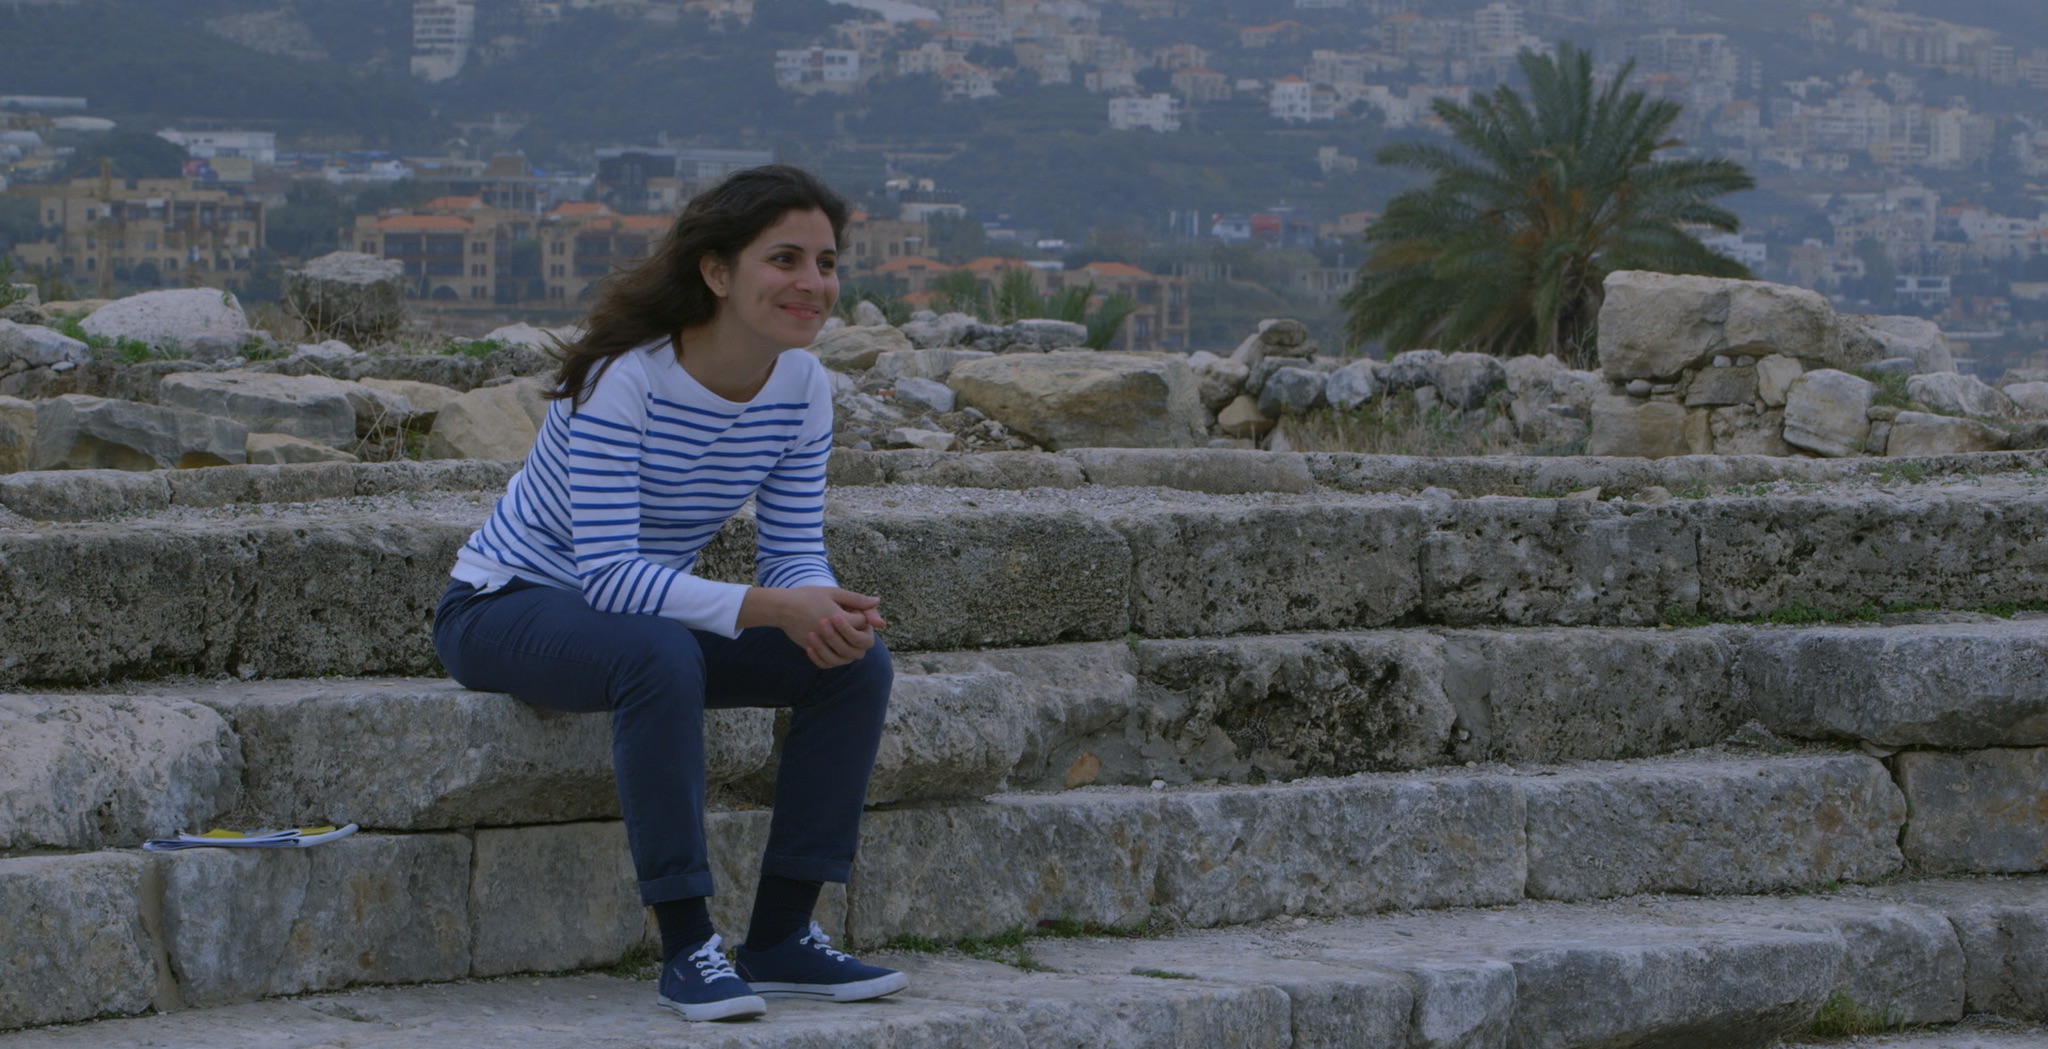 Sarah Hatem artiste franco-libanaise tournage dans le théâtre romain de Byblos ruines rituel<br />
french-lebanese artist shooting at Byblos roman theatre